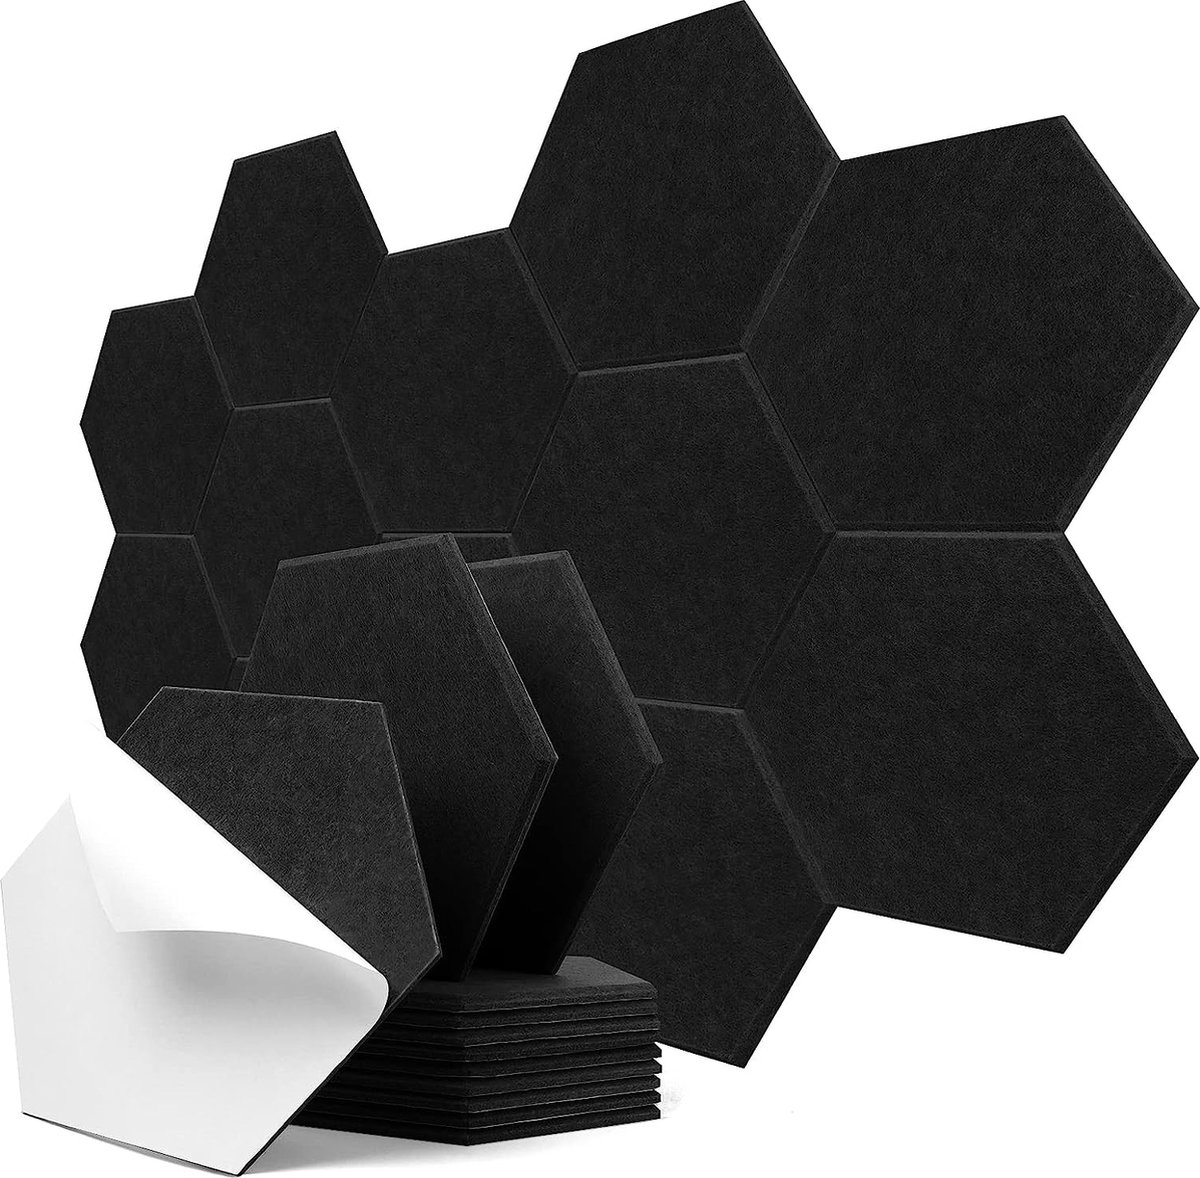 Hexagon Akoestische platen, zelfklevend, 12 stuks, geluidsabsorberende geluidsisolatie met hoge dichtheid, voor geluidsstudio, kantoor, studio en wanddecoratie, 30 x 26 x 0,9 cm, zwart